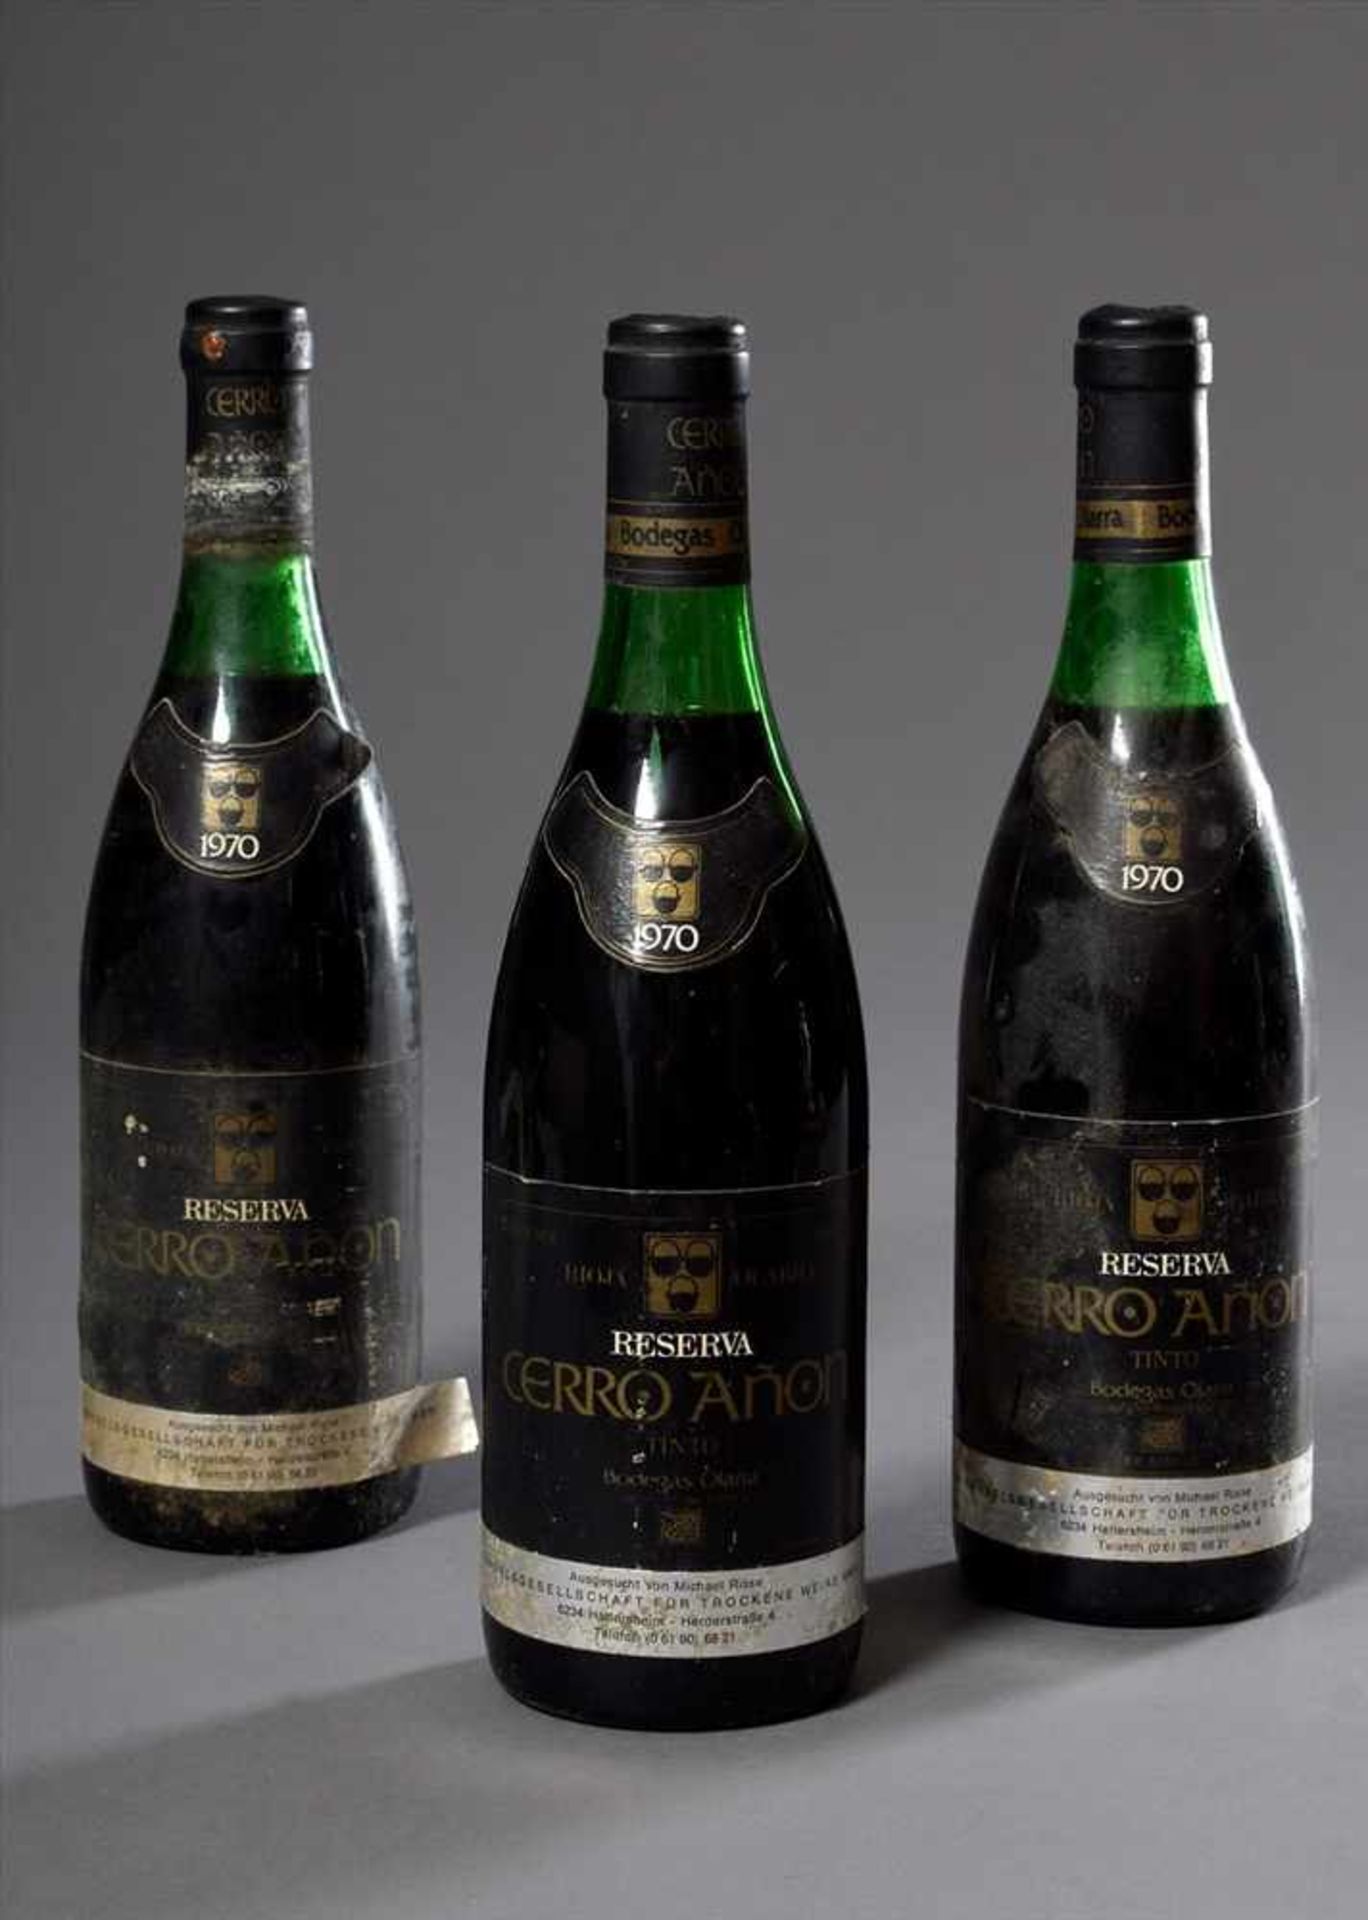 3 Flaschen Rotwein "Rioja Olarra, Reserva, Cerro Anon, Tinto, Bodegas Olarra", 1970, enthält